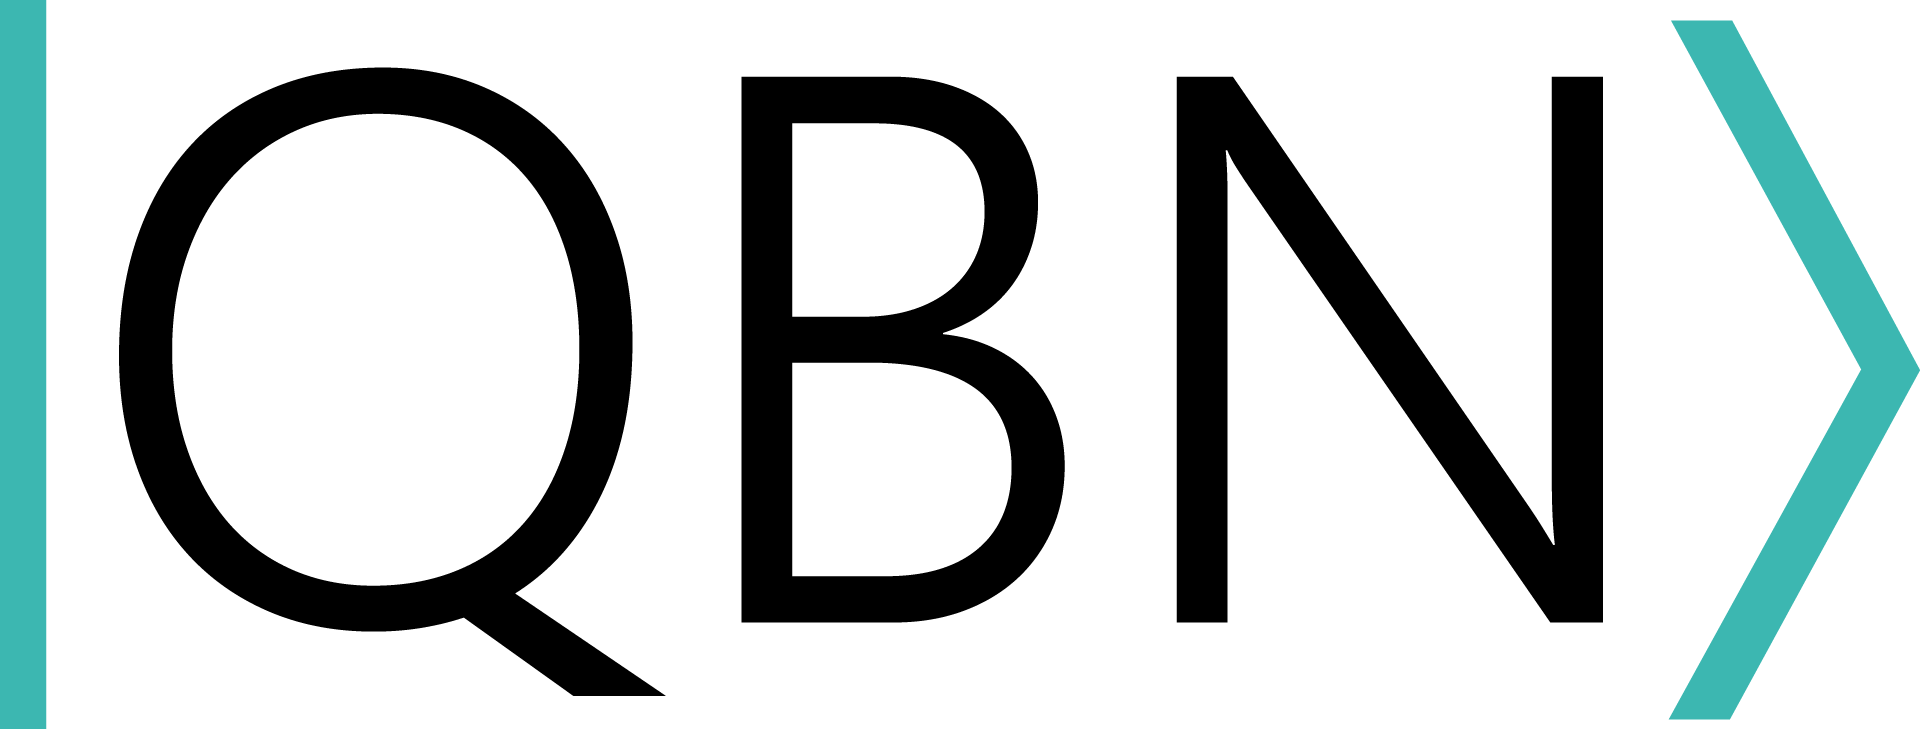 QBN